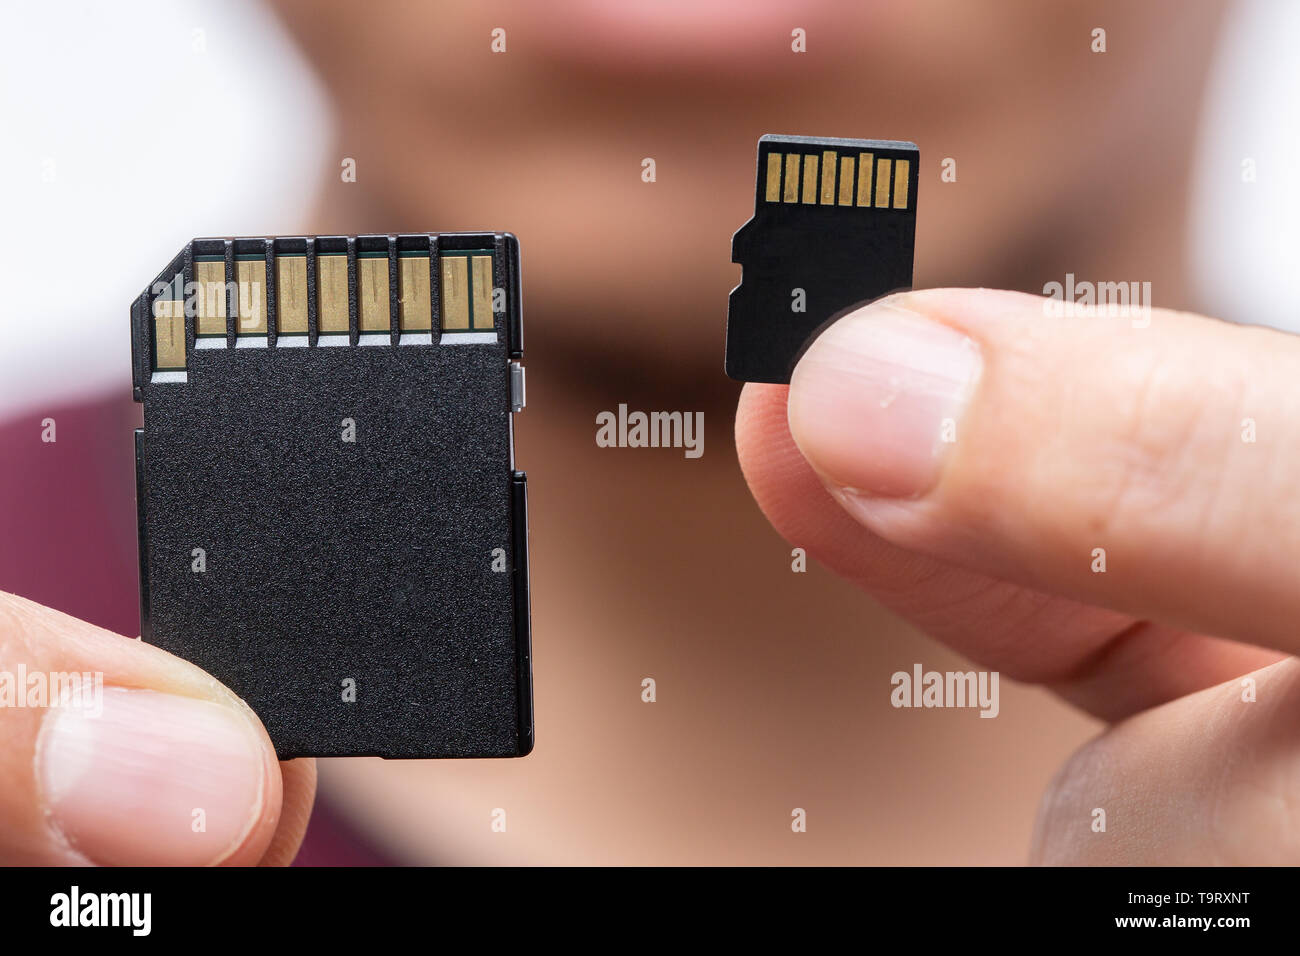 Memorizzazione digitale di dimensioni di memoria questione concetto,SCHEDA SD e scheda Micro SD confronta sulla maniglia Foto Stock